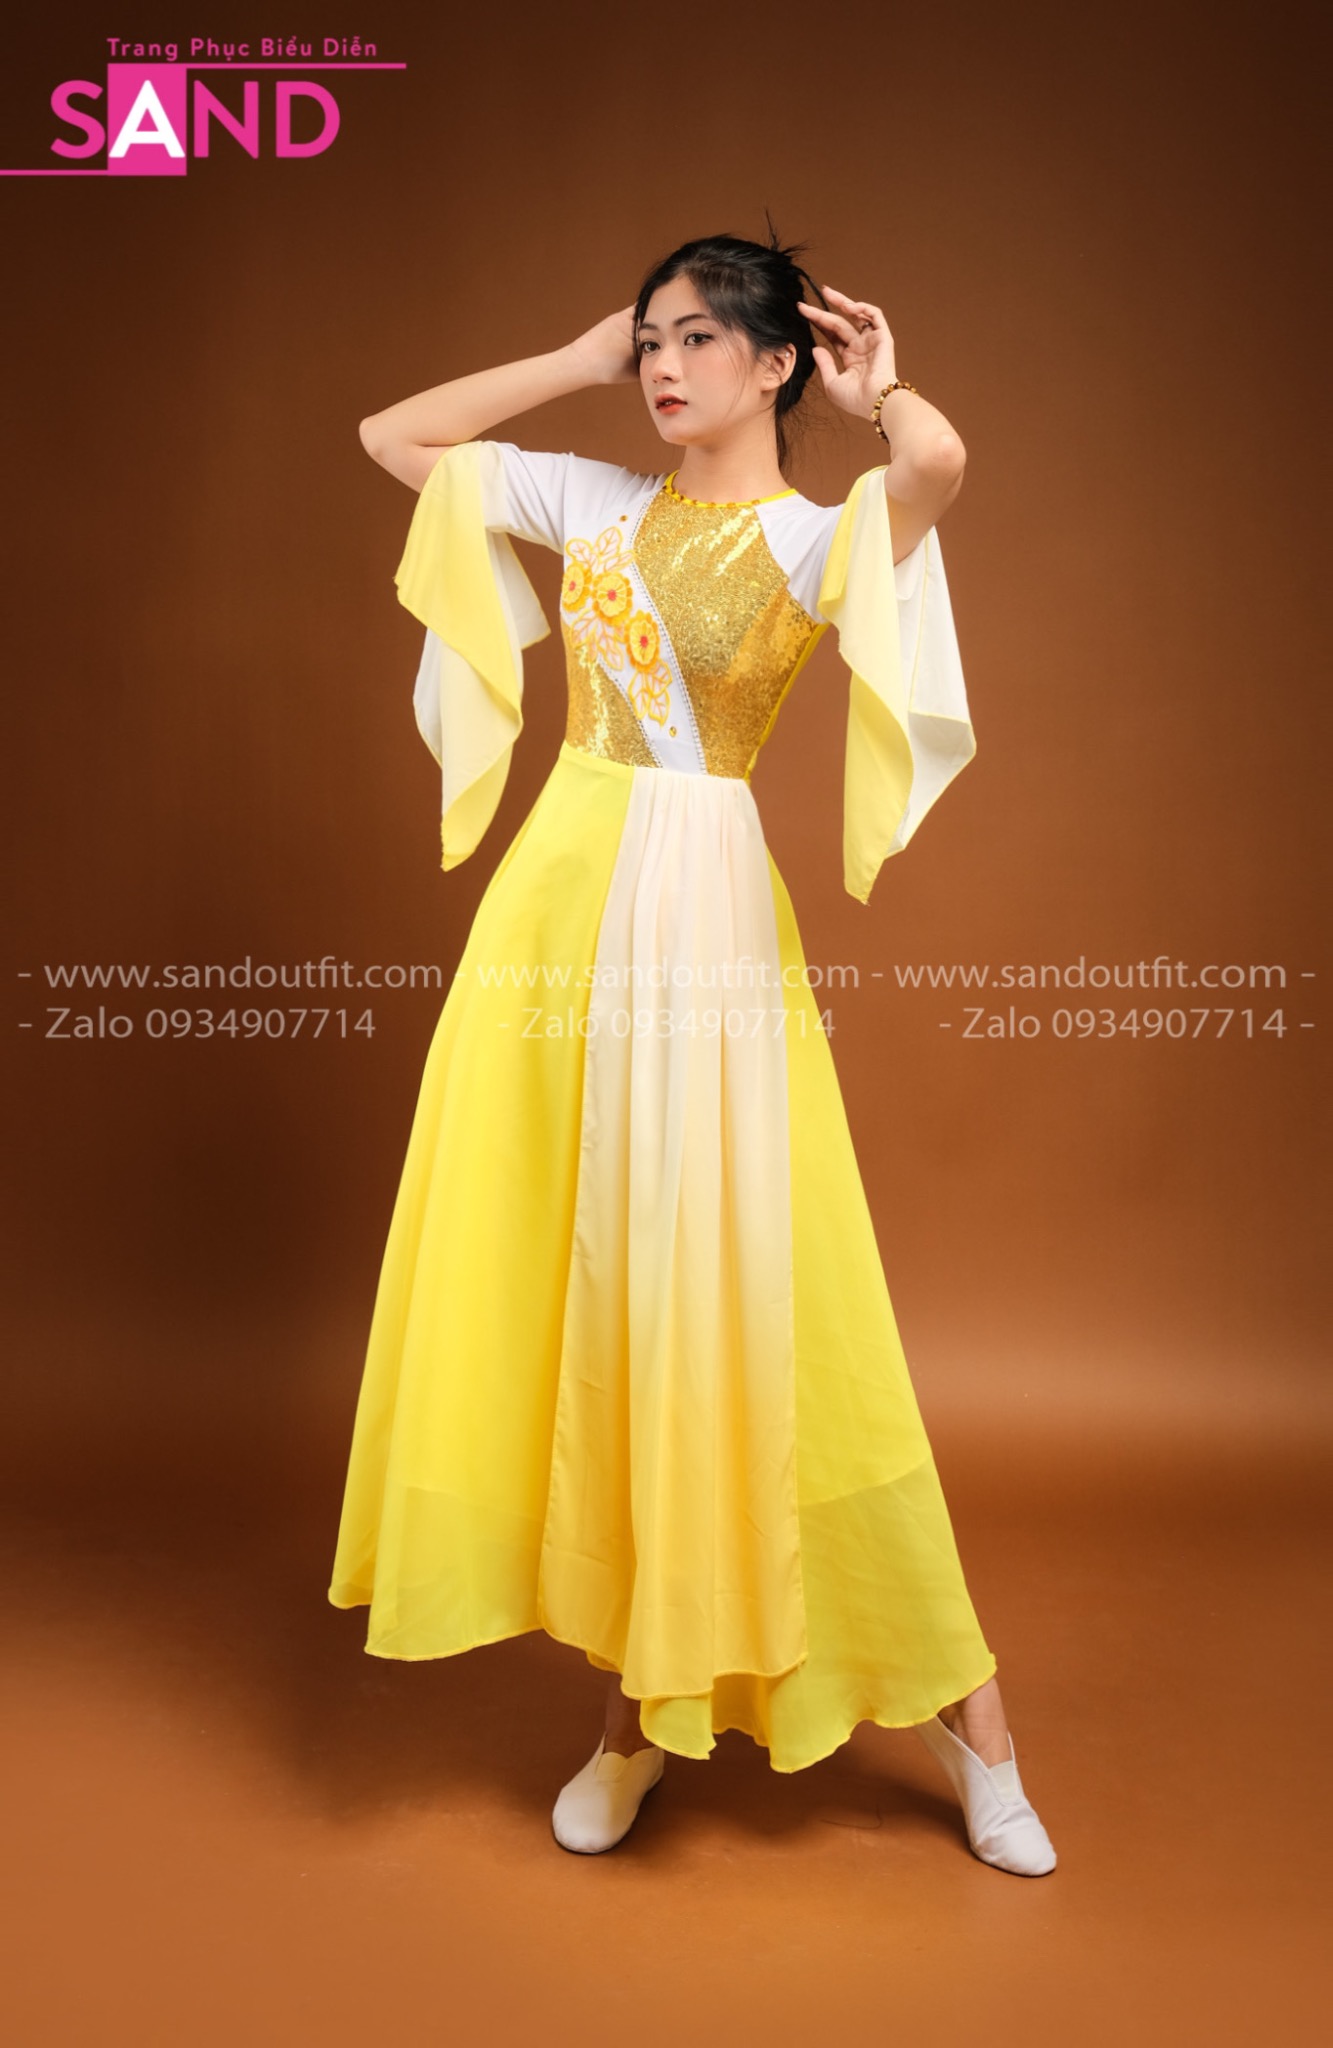 Thuê Váy Múa Giá Rẻ Và Đẹp Nhất Sài Gòn - Mẫu Mã Đa Dạng - Giá Cả Hợp